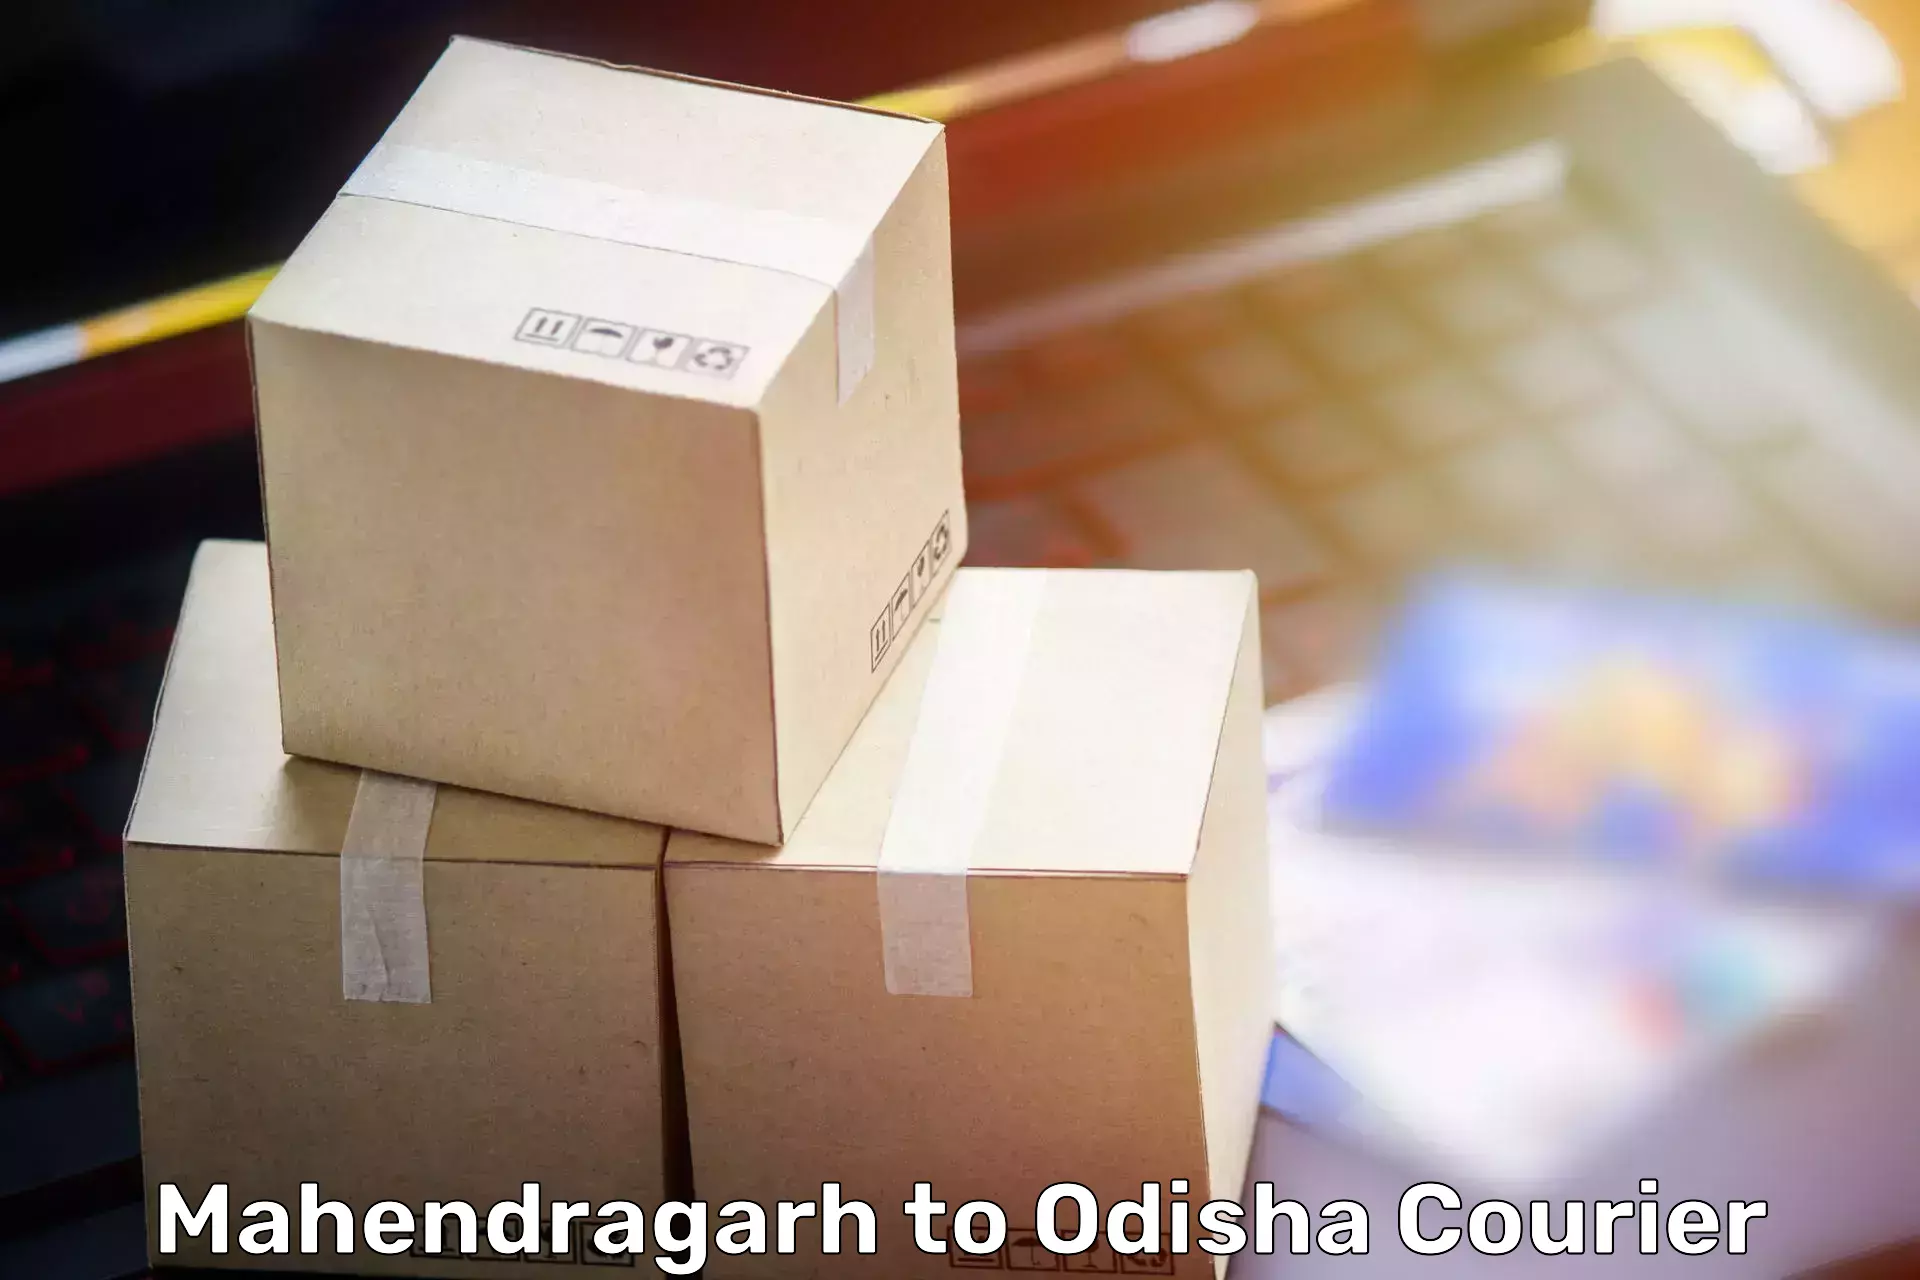 Furniture delivery service Mahendragarh to Rairakhol